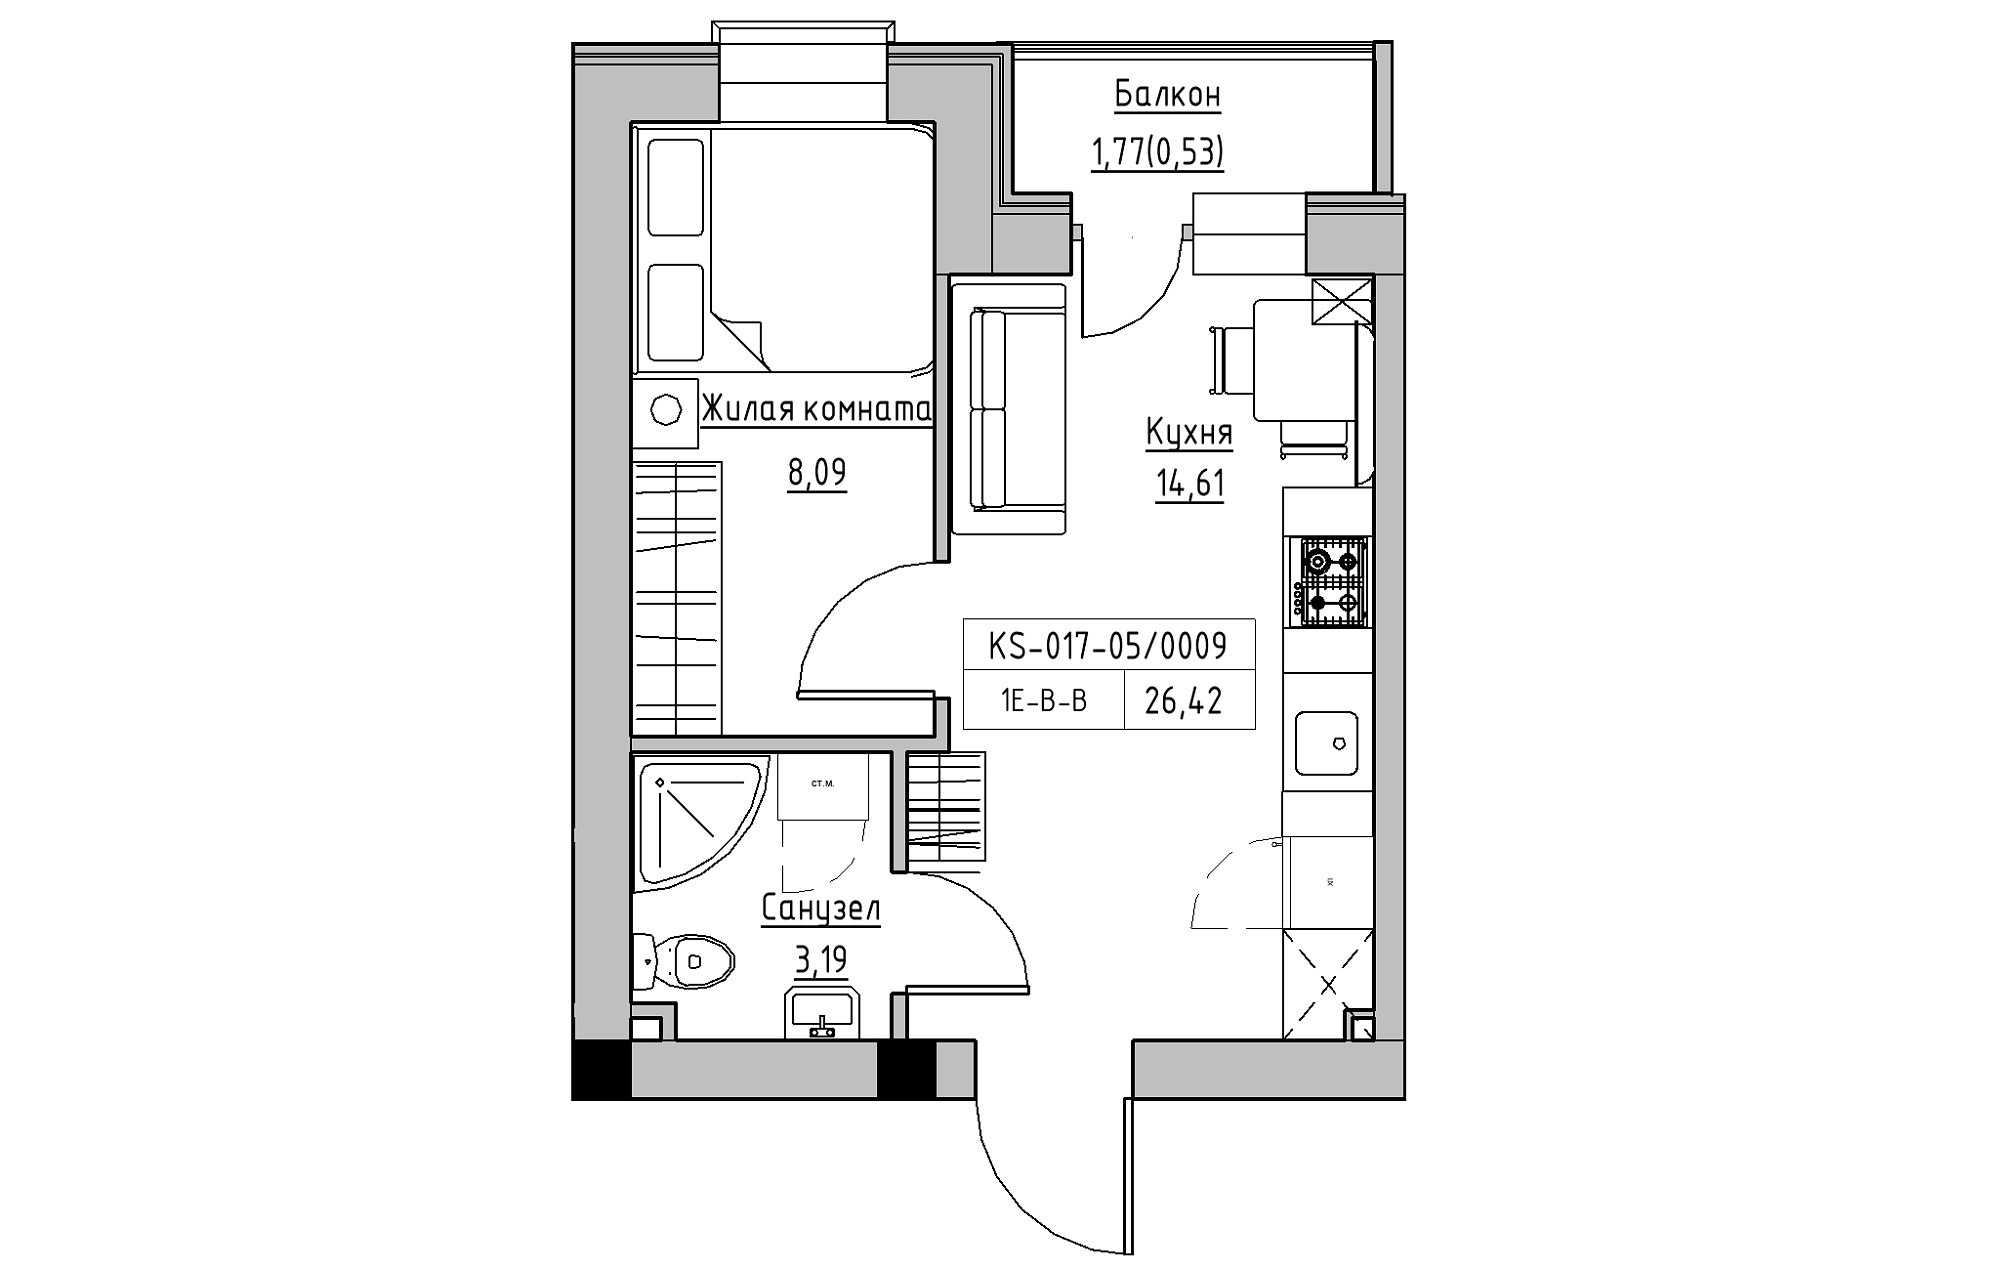 Планировка 1-к квартира площей 26.42м2, KS-017-05/0009.